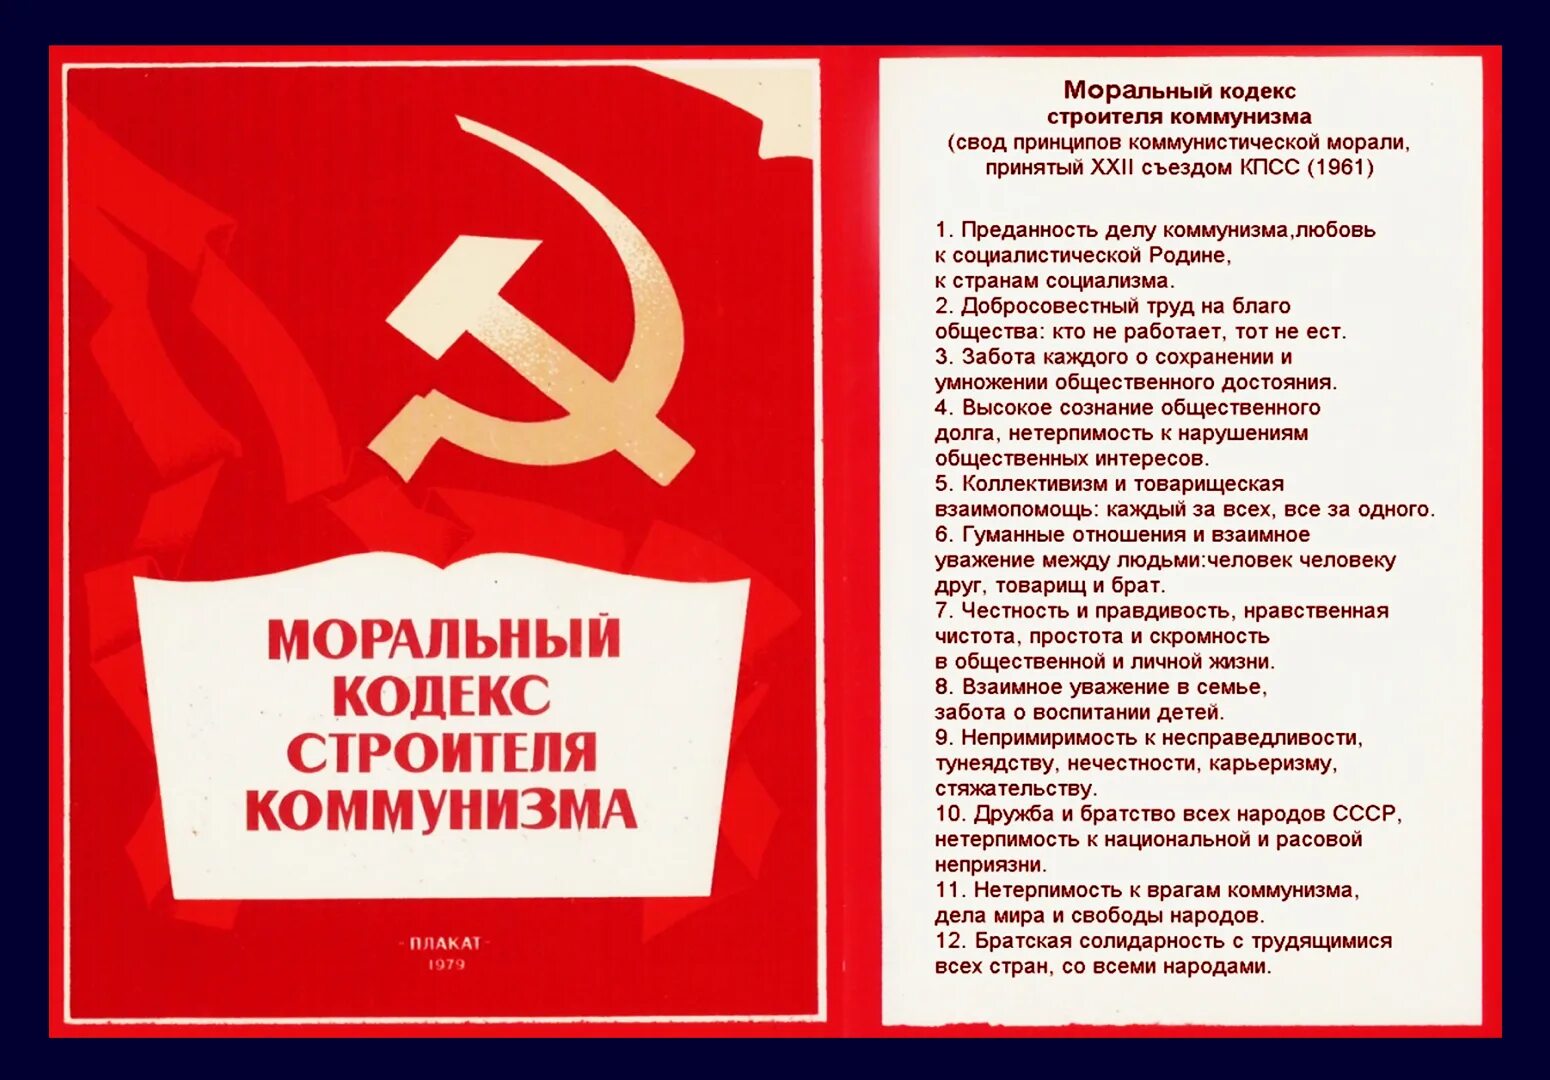 Моральный кодекс строителя коммунизма. Моральный кодекс строителя коммунизма 1961. Кодекс строителя коммунизма. Моральный кодекс строителя коммунизма плакат.